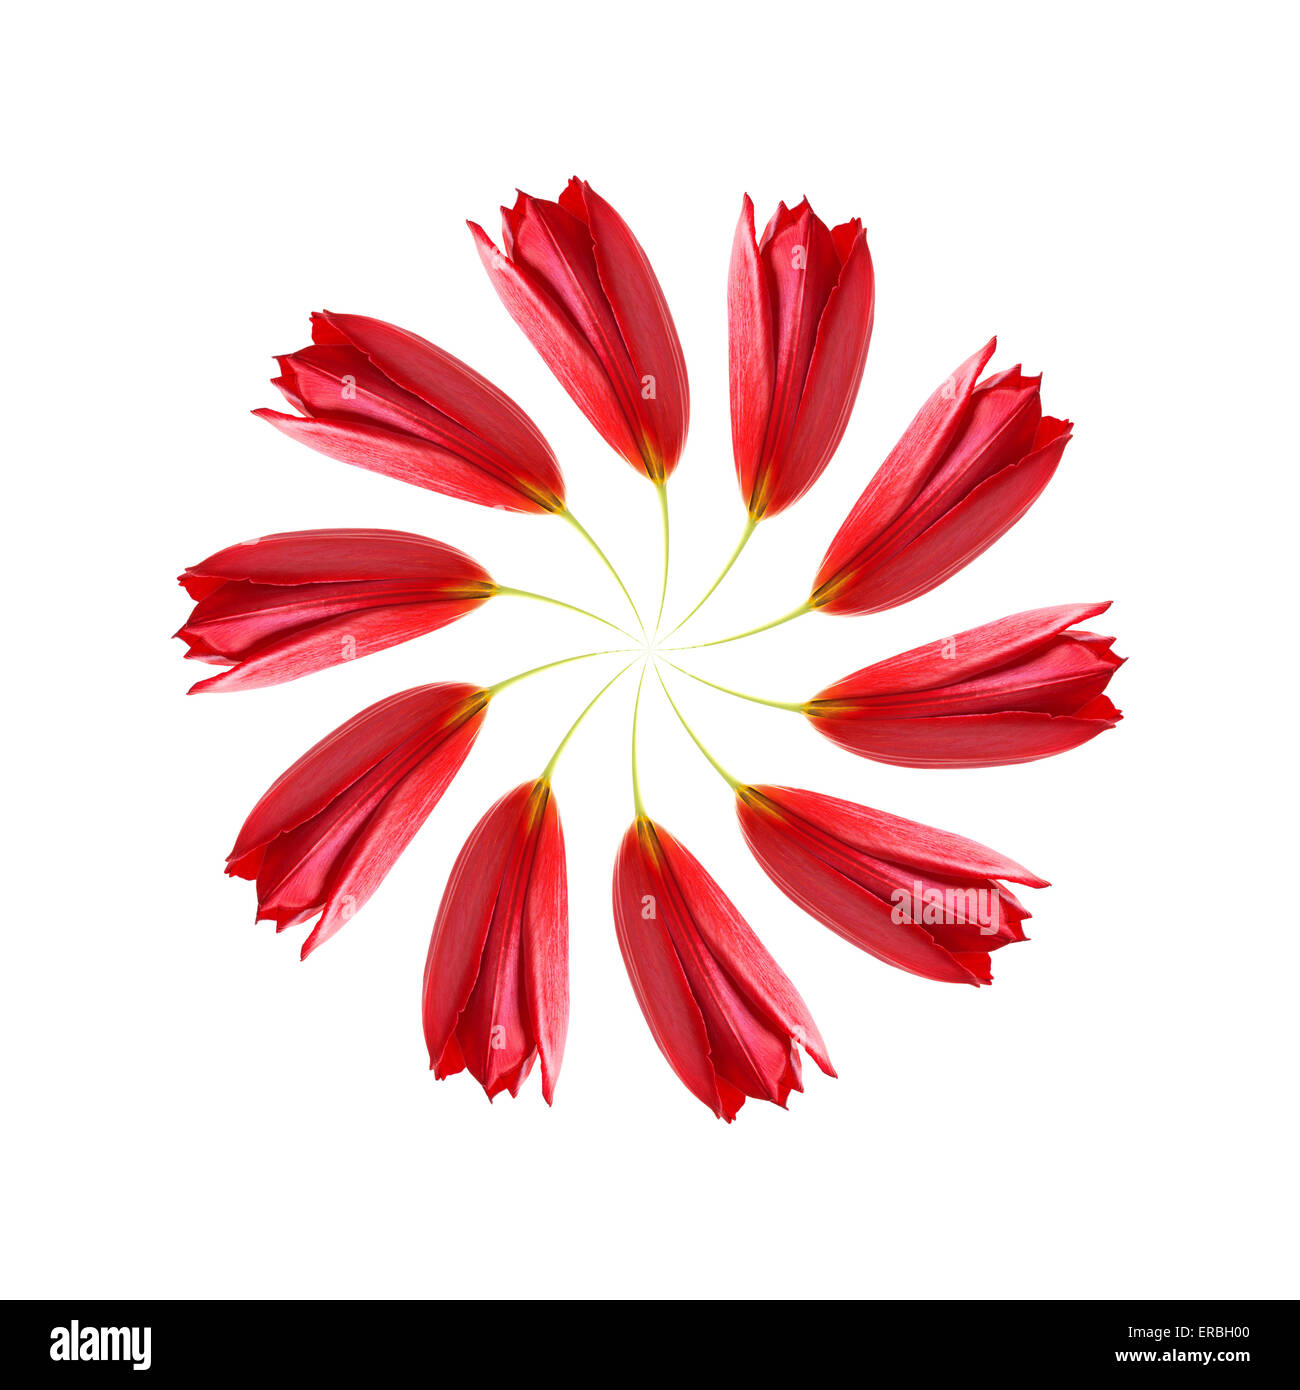 Espiral distorsionada de tulipanes rojos sobre un fondo blanco. Foto de stock